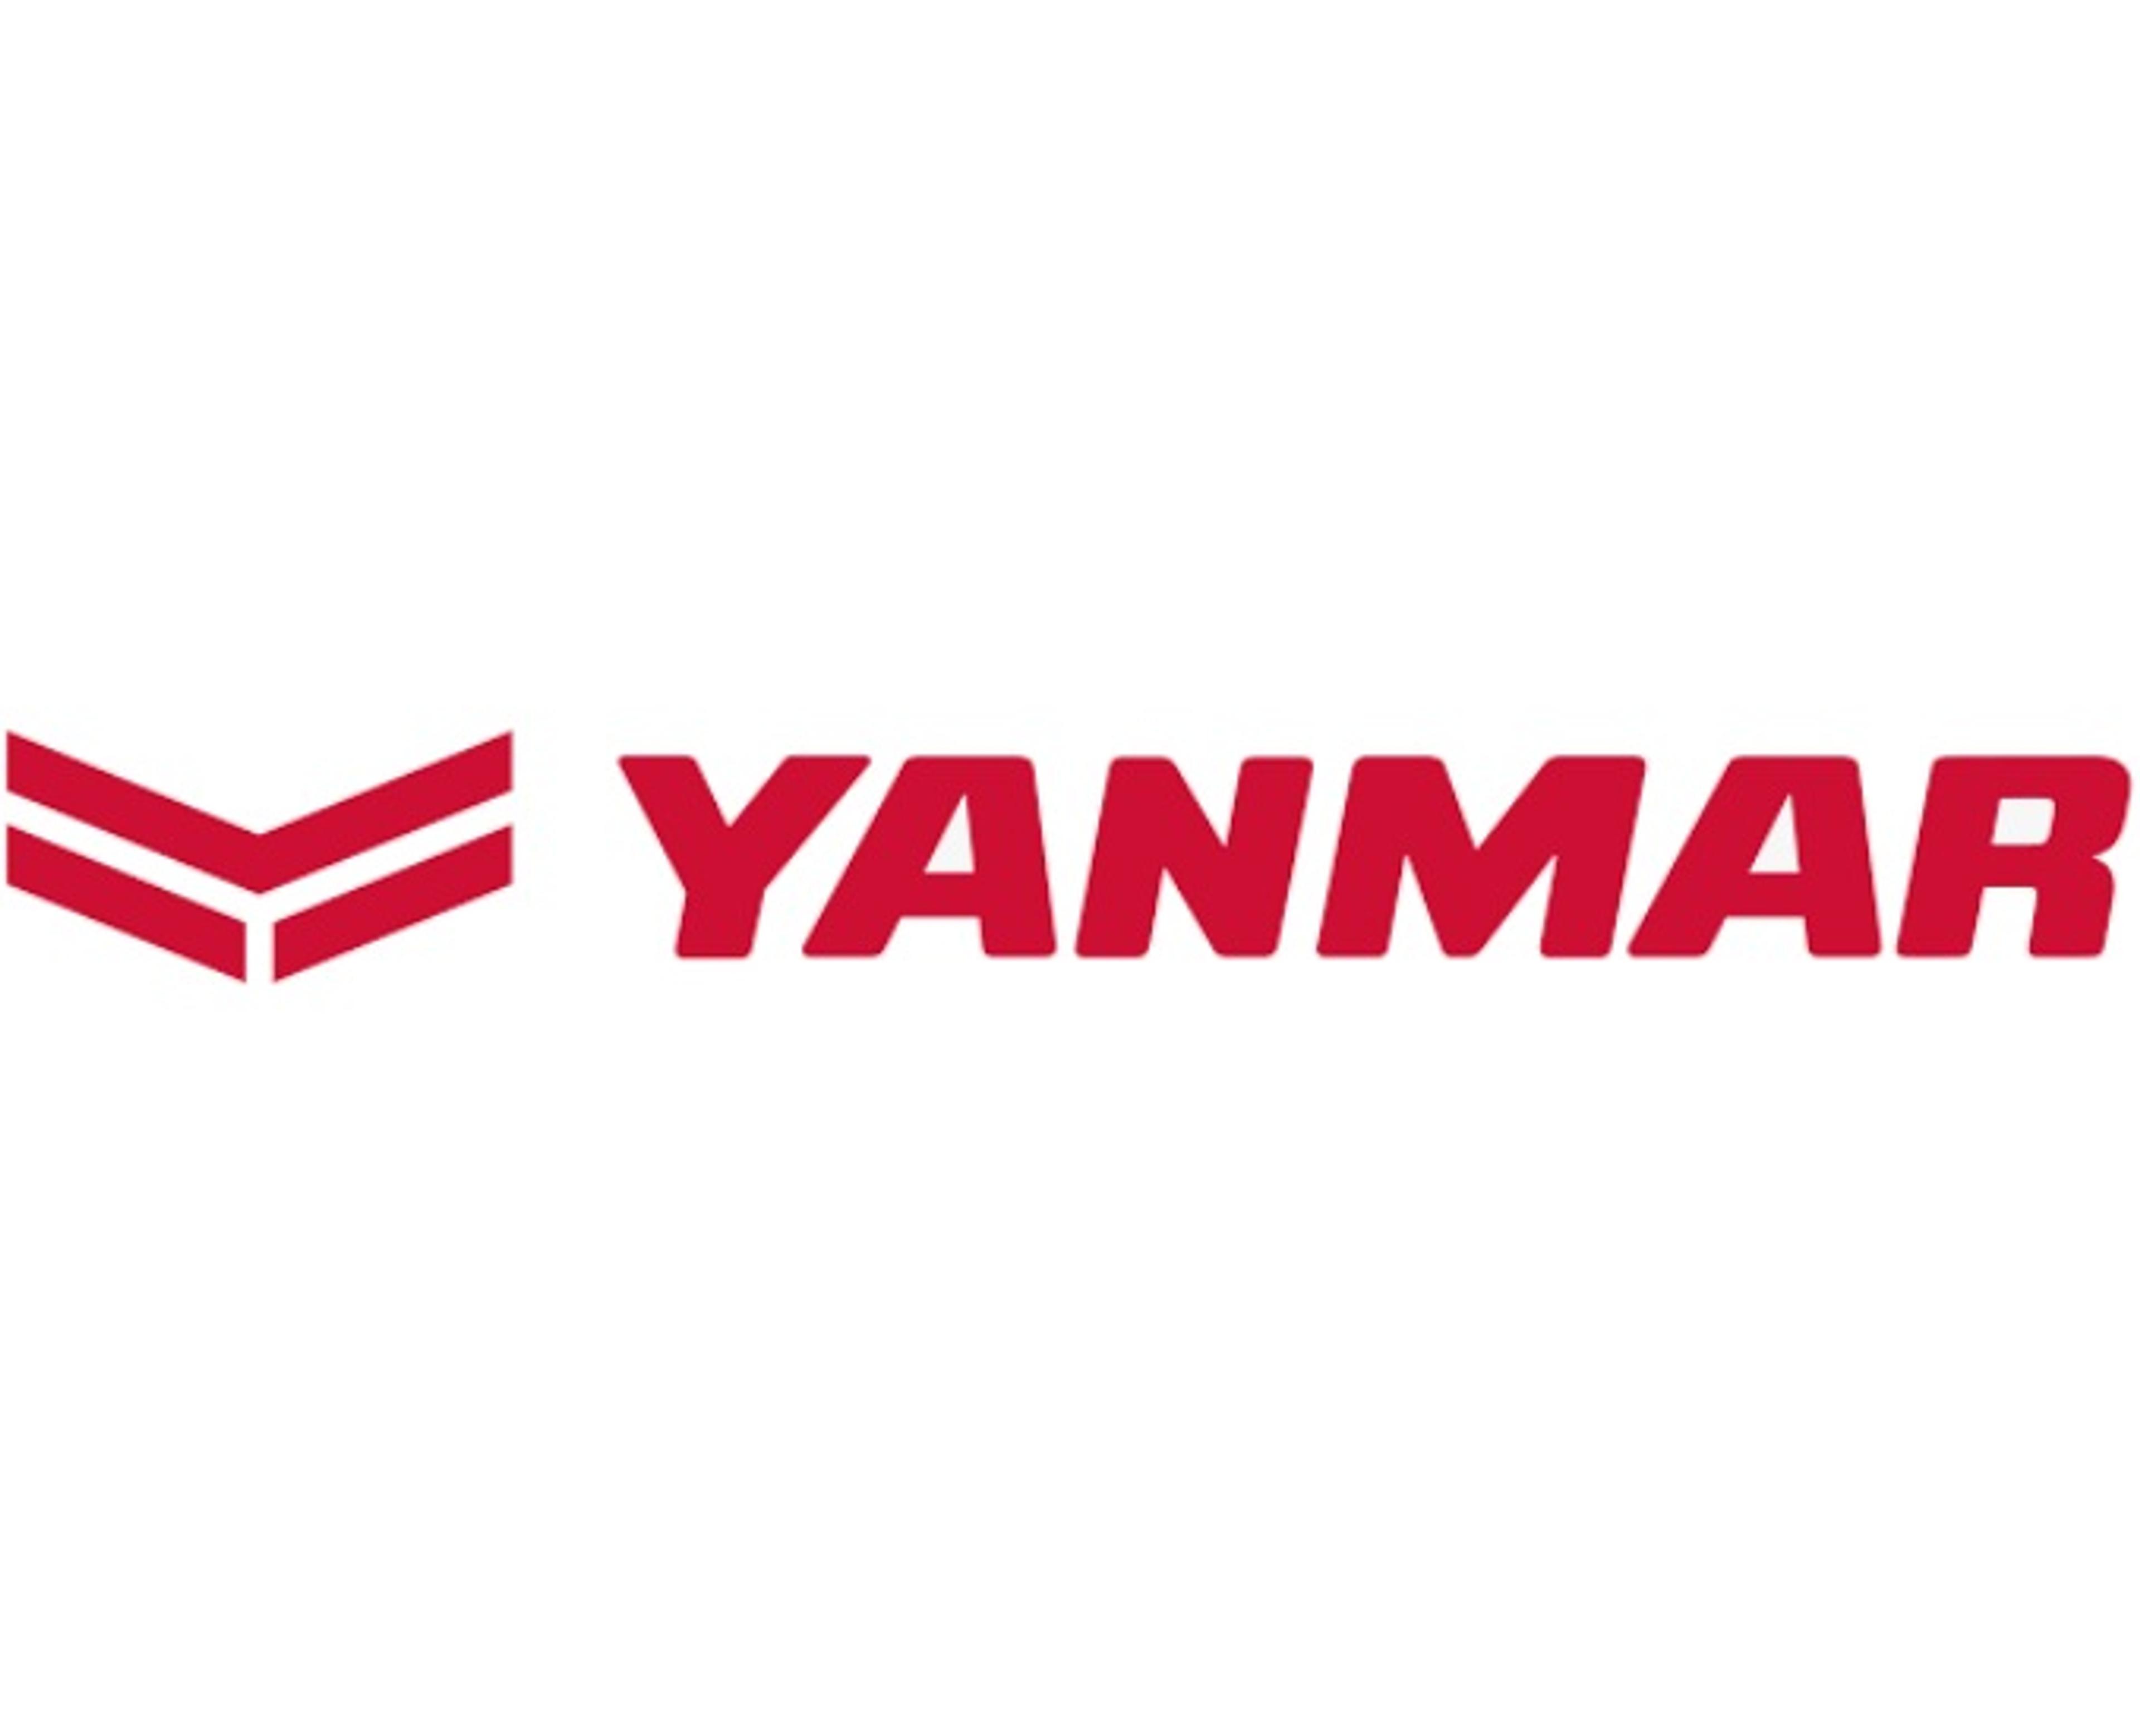 Köp dina båtmotordelar till Yanmar hos oss!